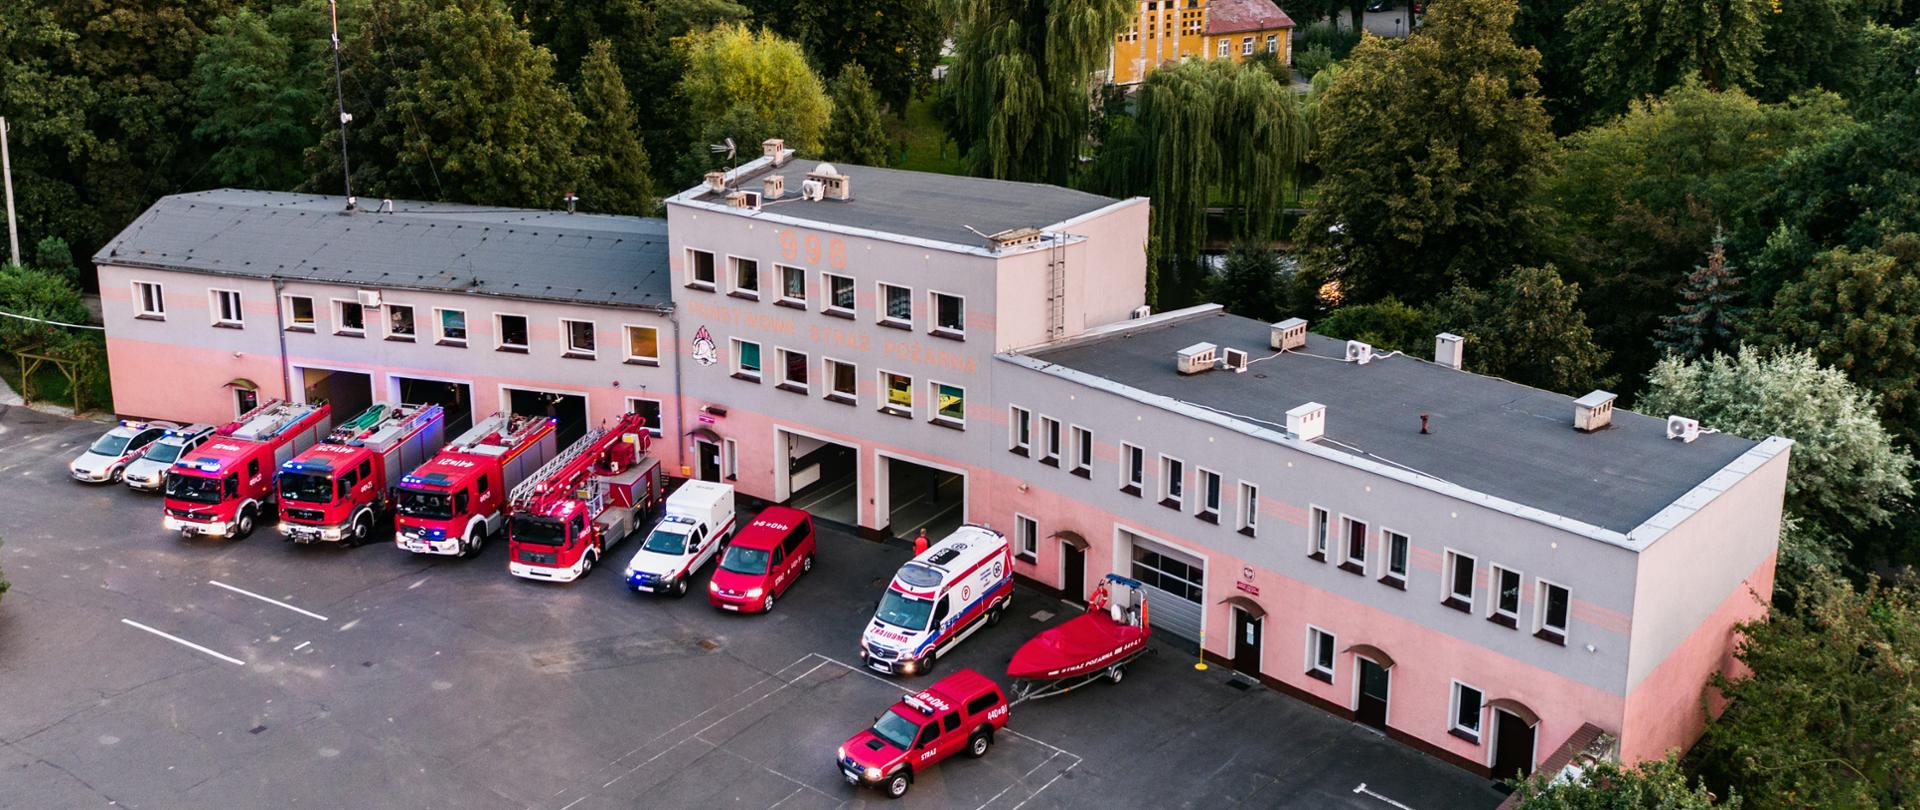 Obraz przedstawia widok na budynek Komendy Powiatowej Państwowej Straży Pożarnej w Jaworze. Przed budynkiem ustawione wszystkie pojazdy pożarnicze komendy oraz karetka Pogotowia Ratunkowego. W tle jaworski park.